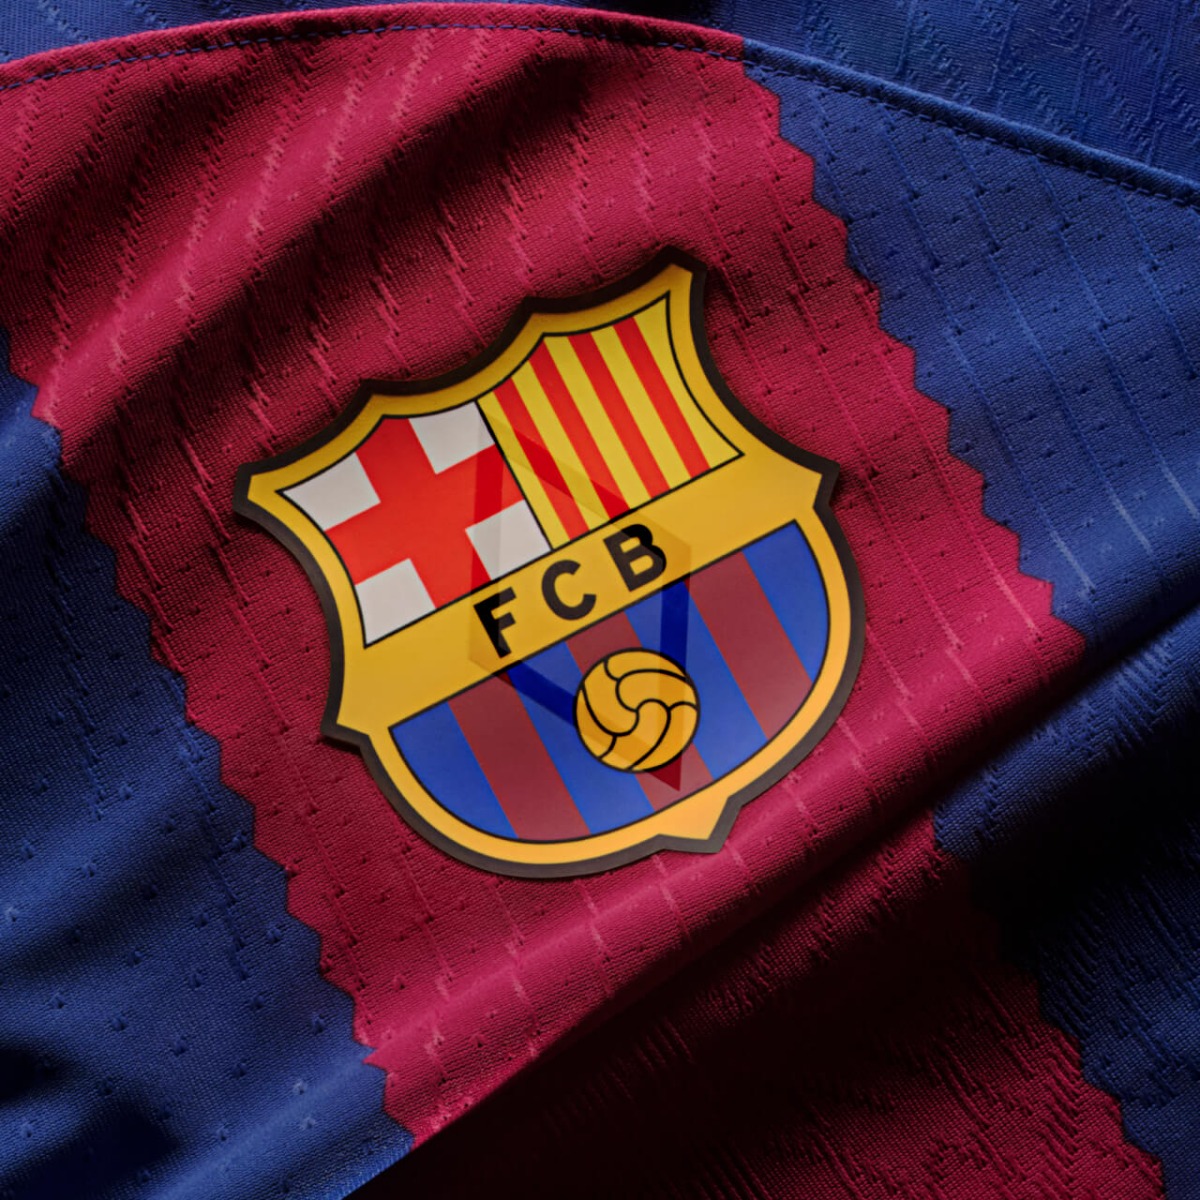 Chaussettes FC Barcelone - Enfant – Barça Official Store Spotify Camp Nou